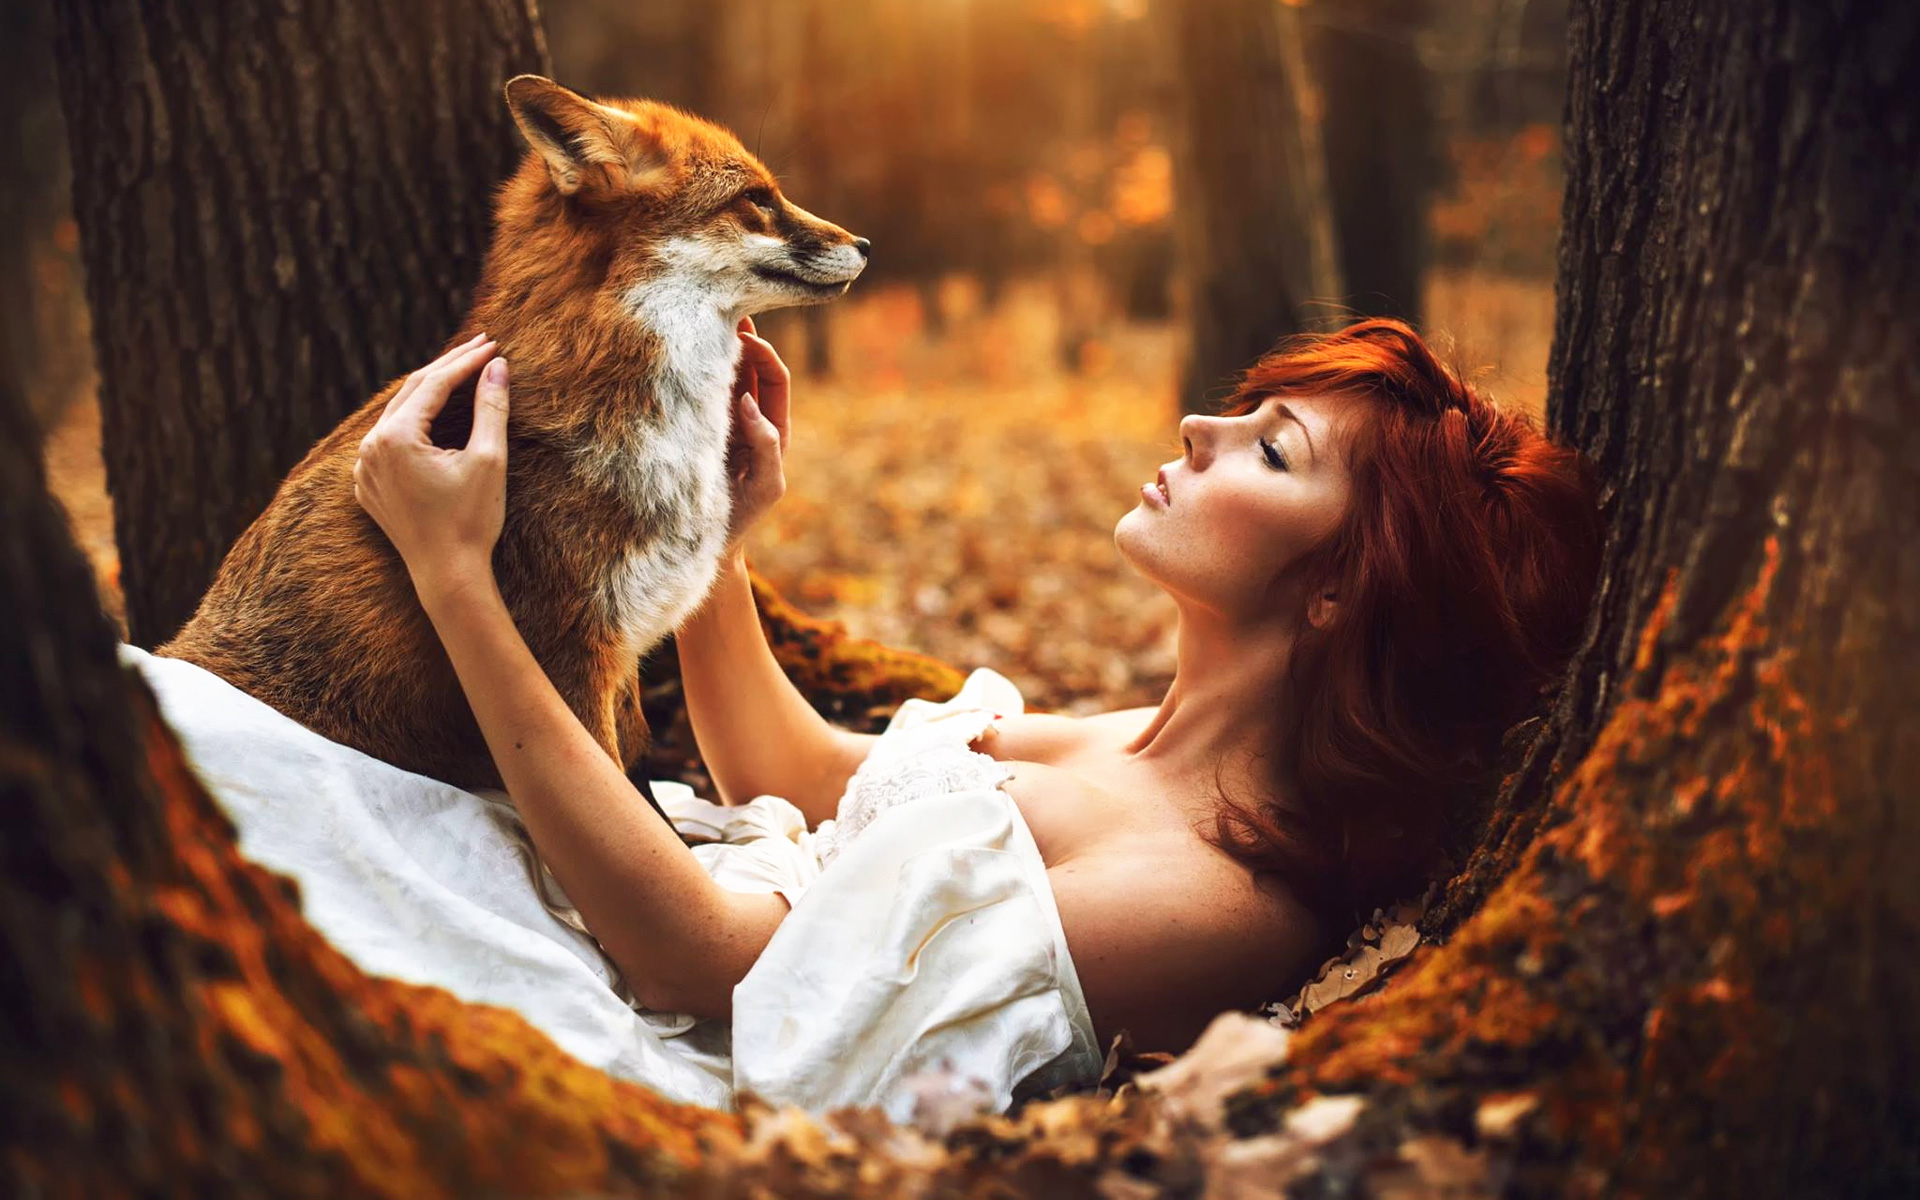 Фото лисы рыжей на аватарку красивое